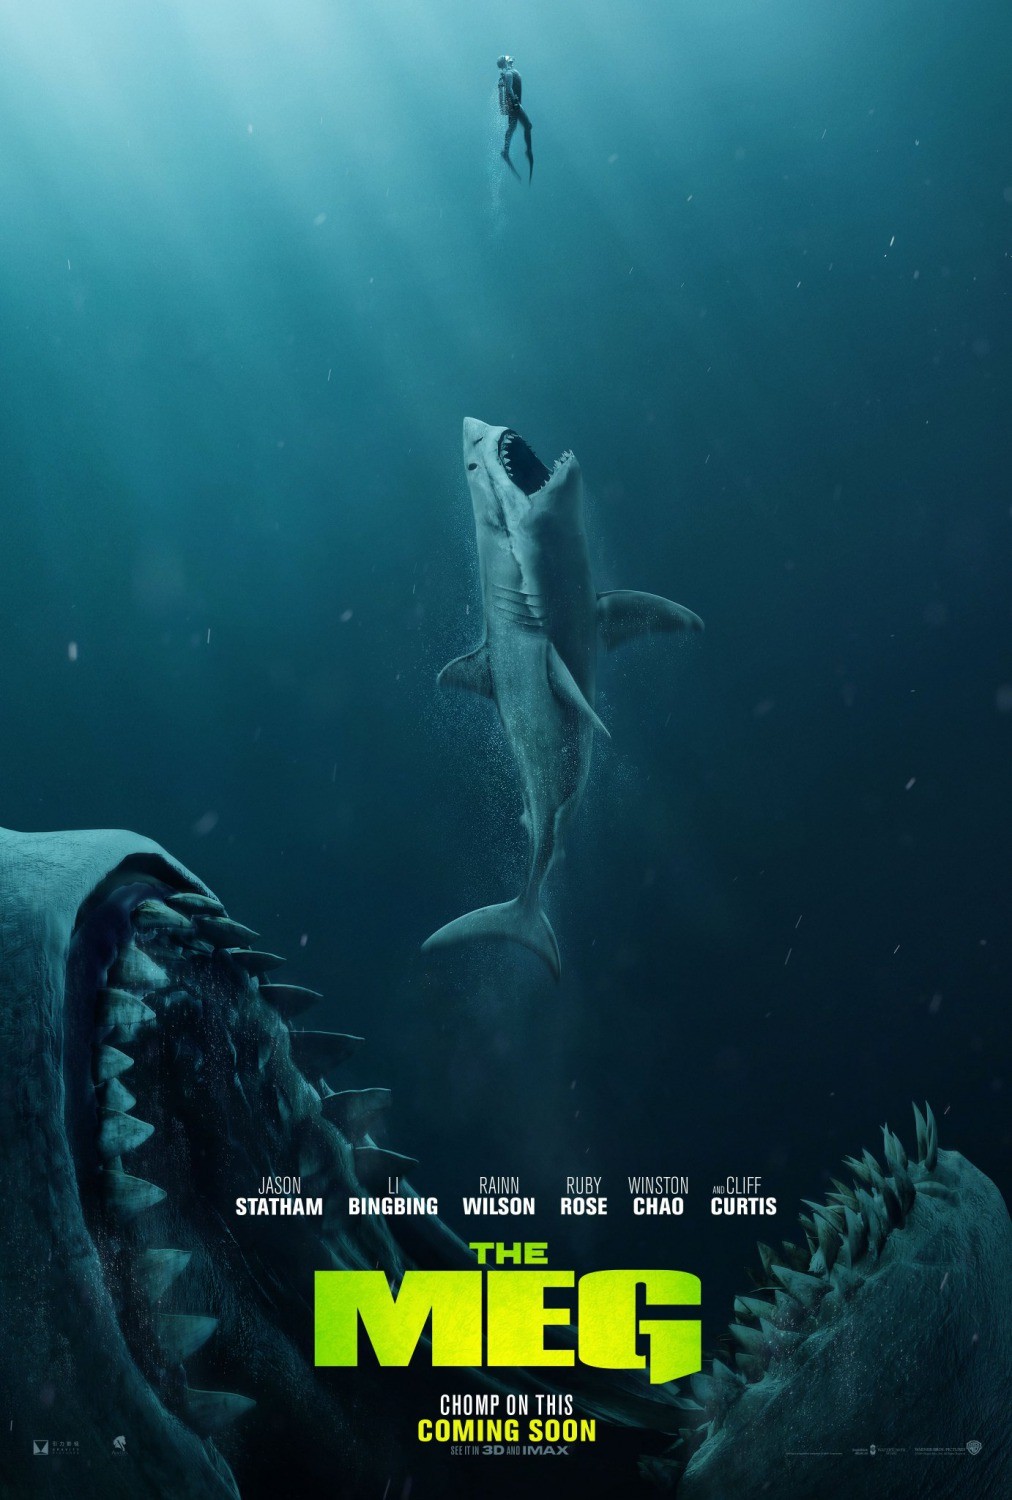 shark-il-primo-squalo-trailer-italiano-e-poster-del-thriller-meg-con-jason-statham-3.jpg